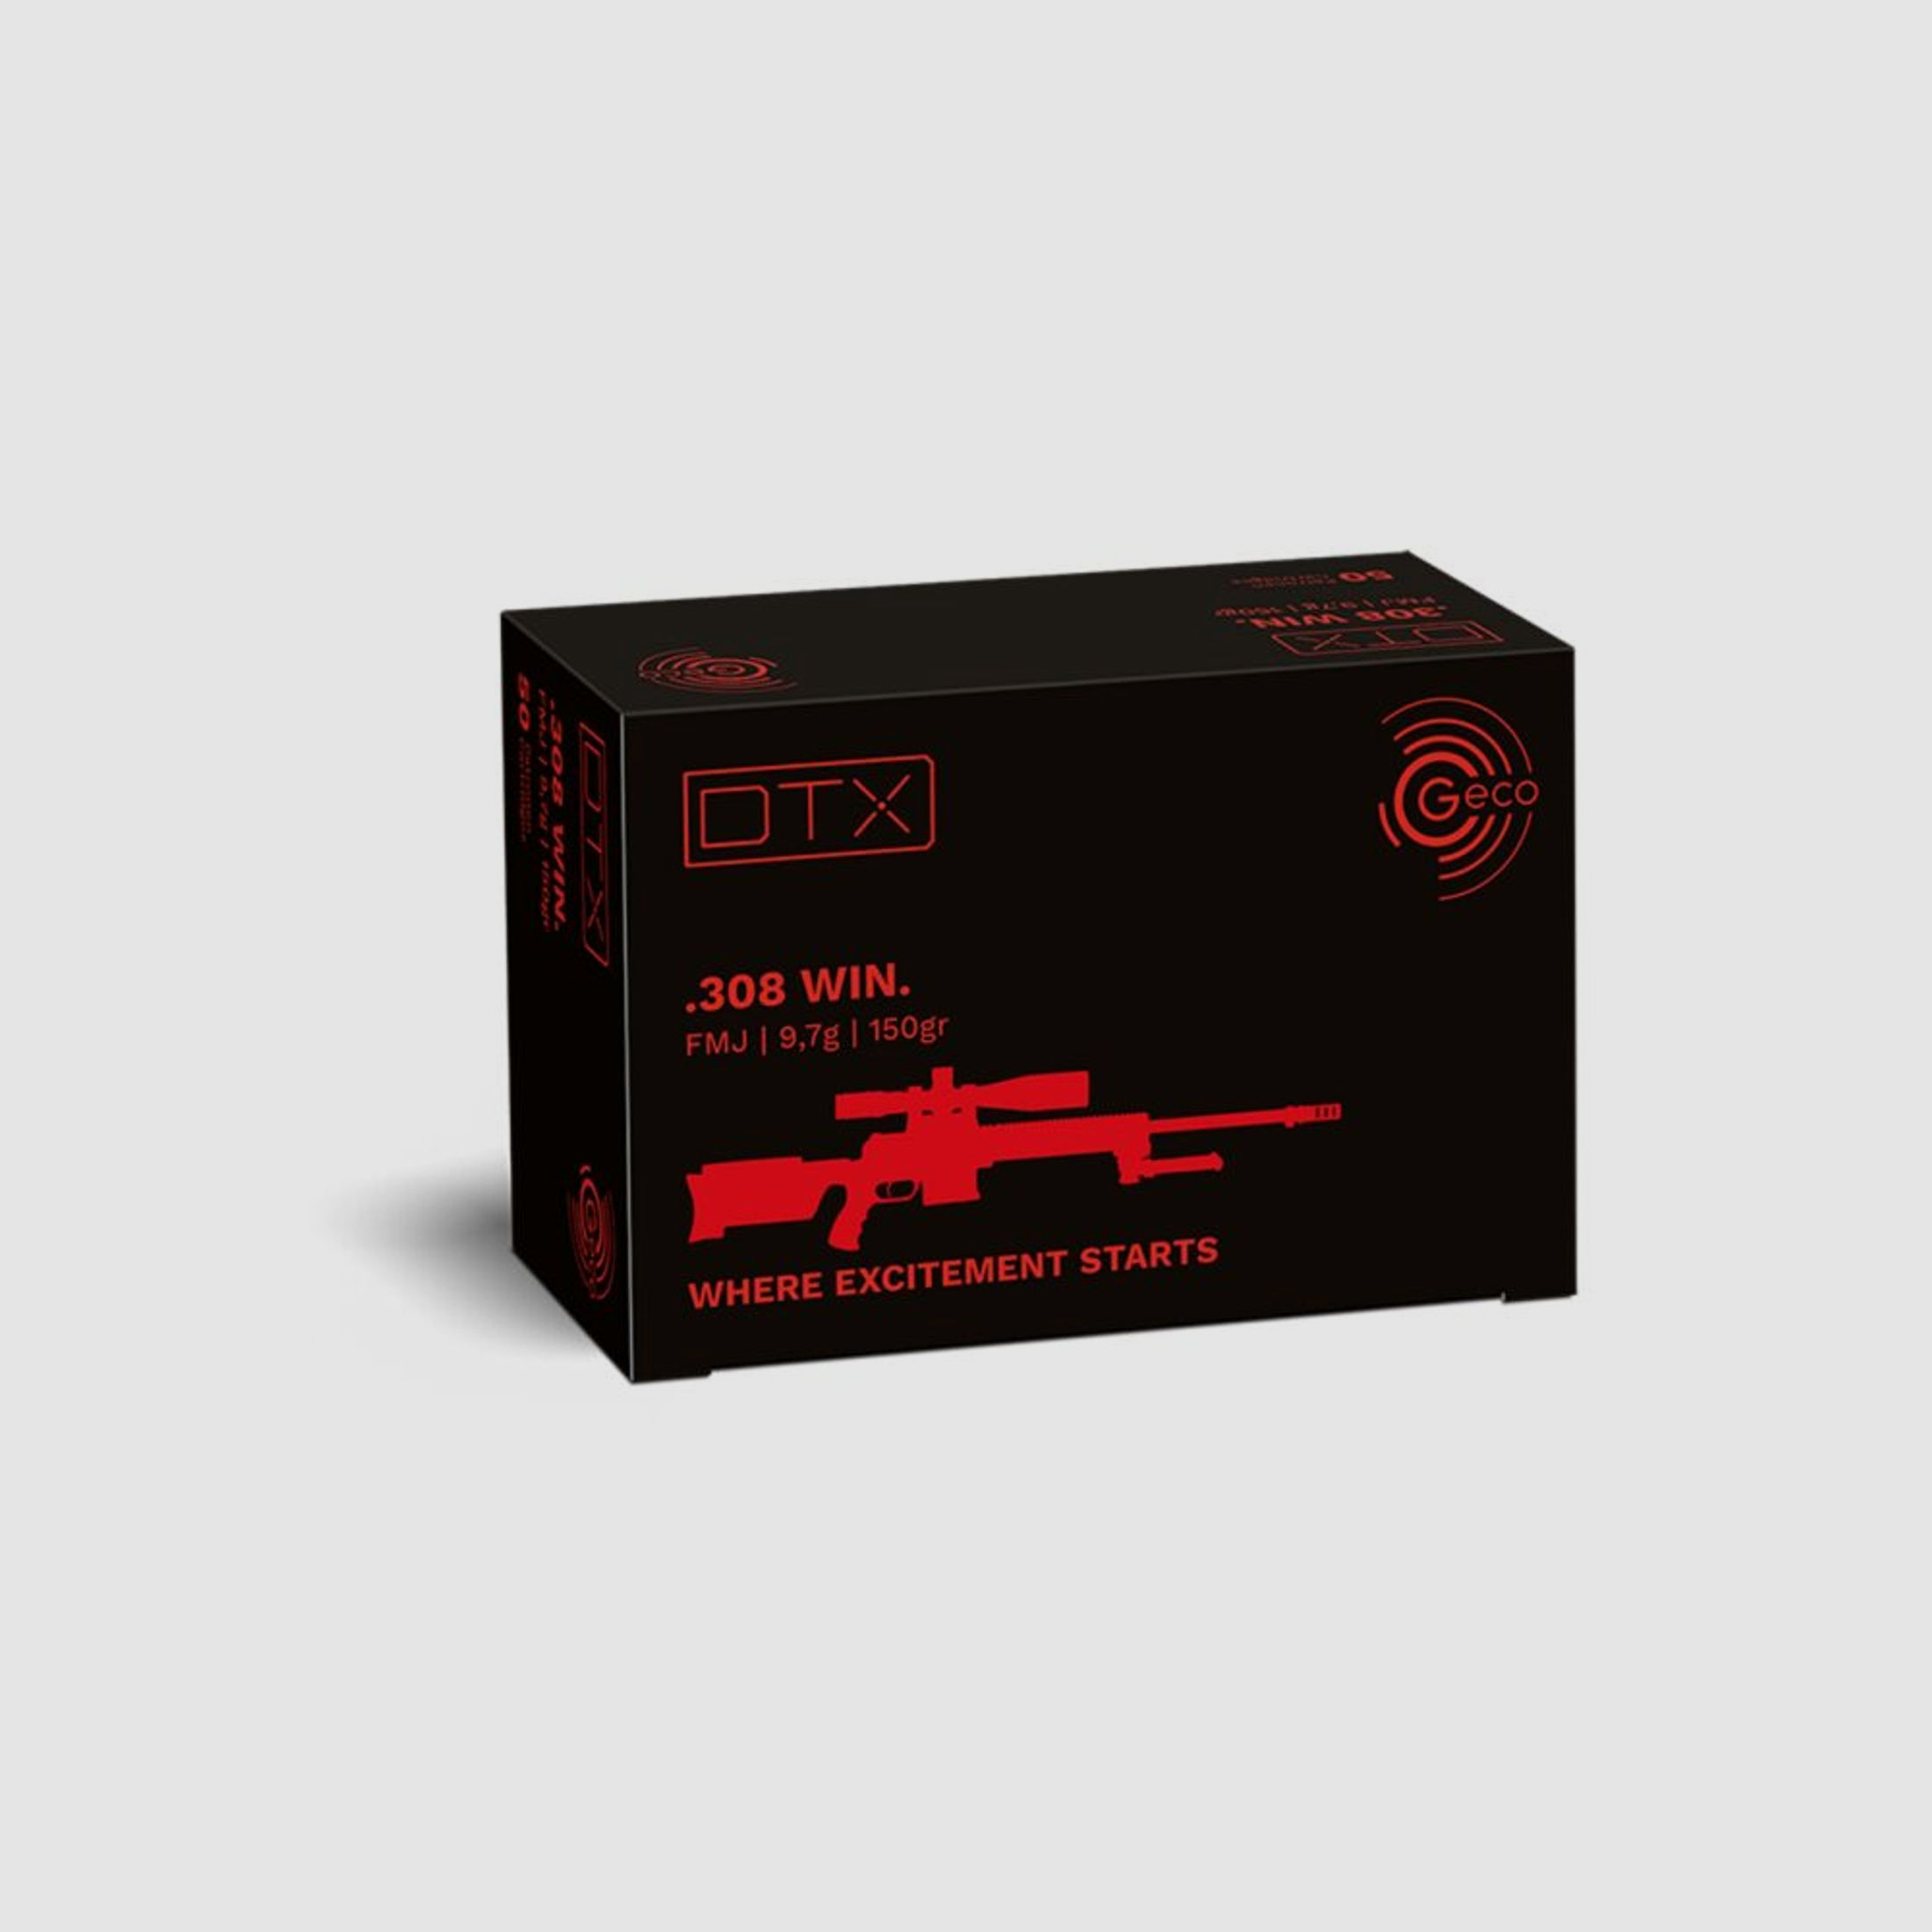 GECO	 Centrefire rifle cartridges GECO DTX